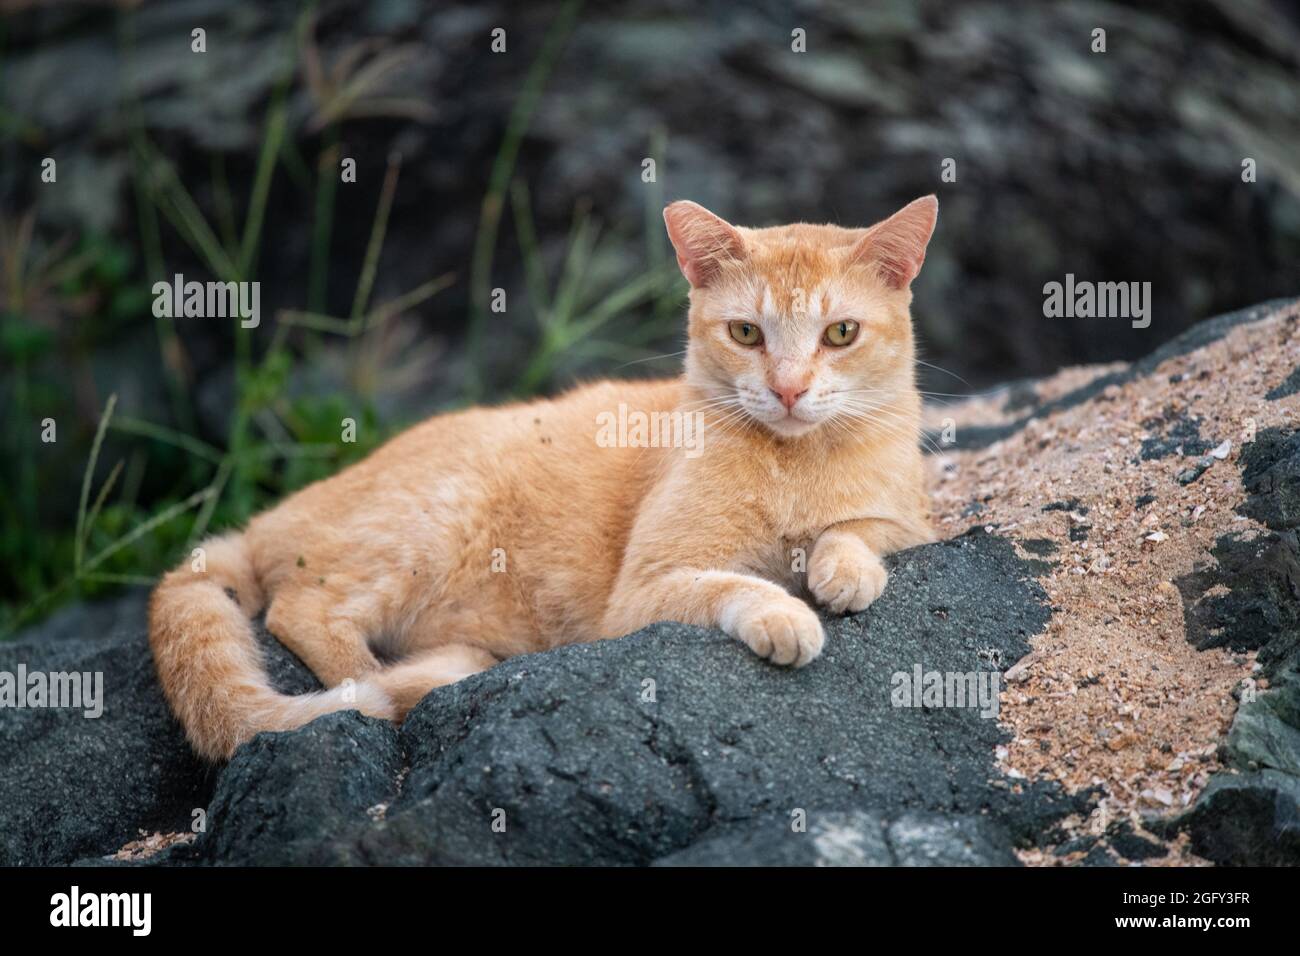 Un chat orange se trouve sur une roche noire sablonneuse. - Porto Rico Banque D'Images